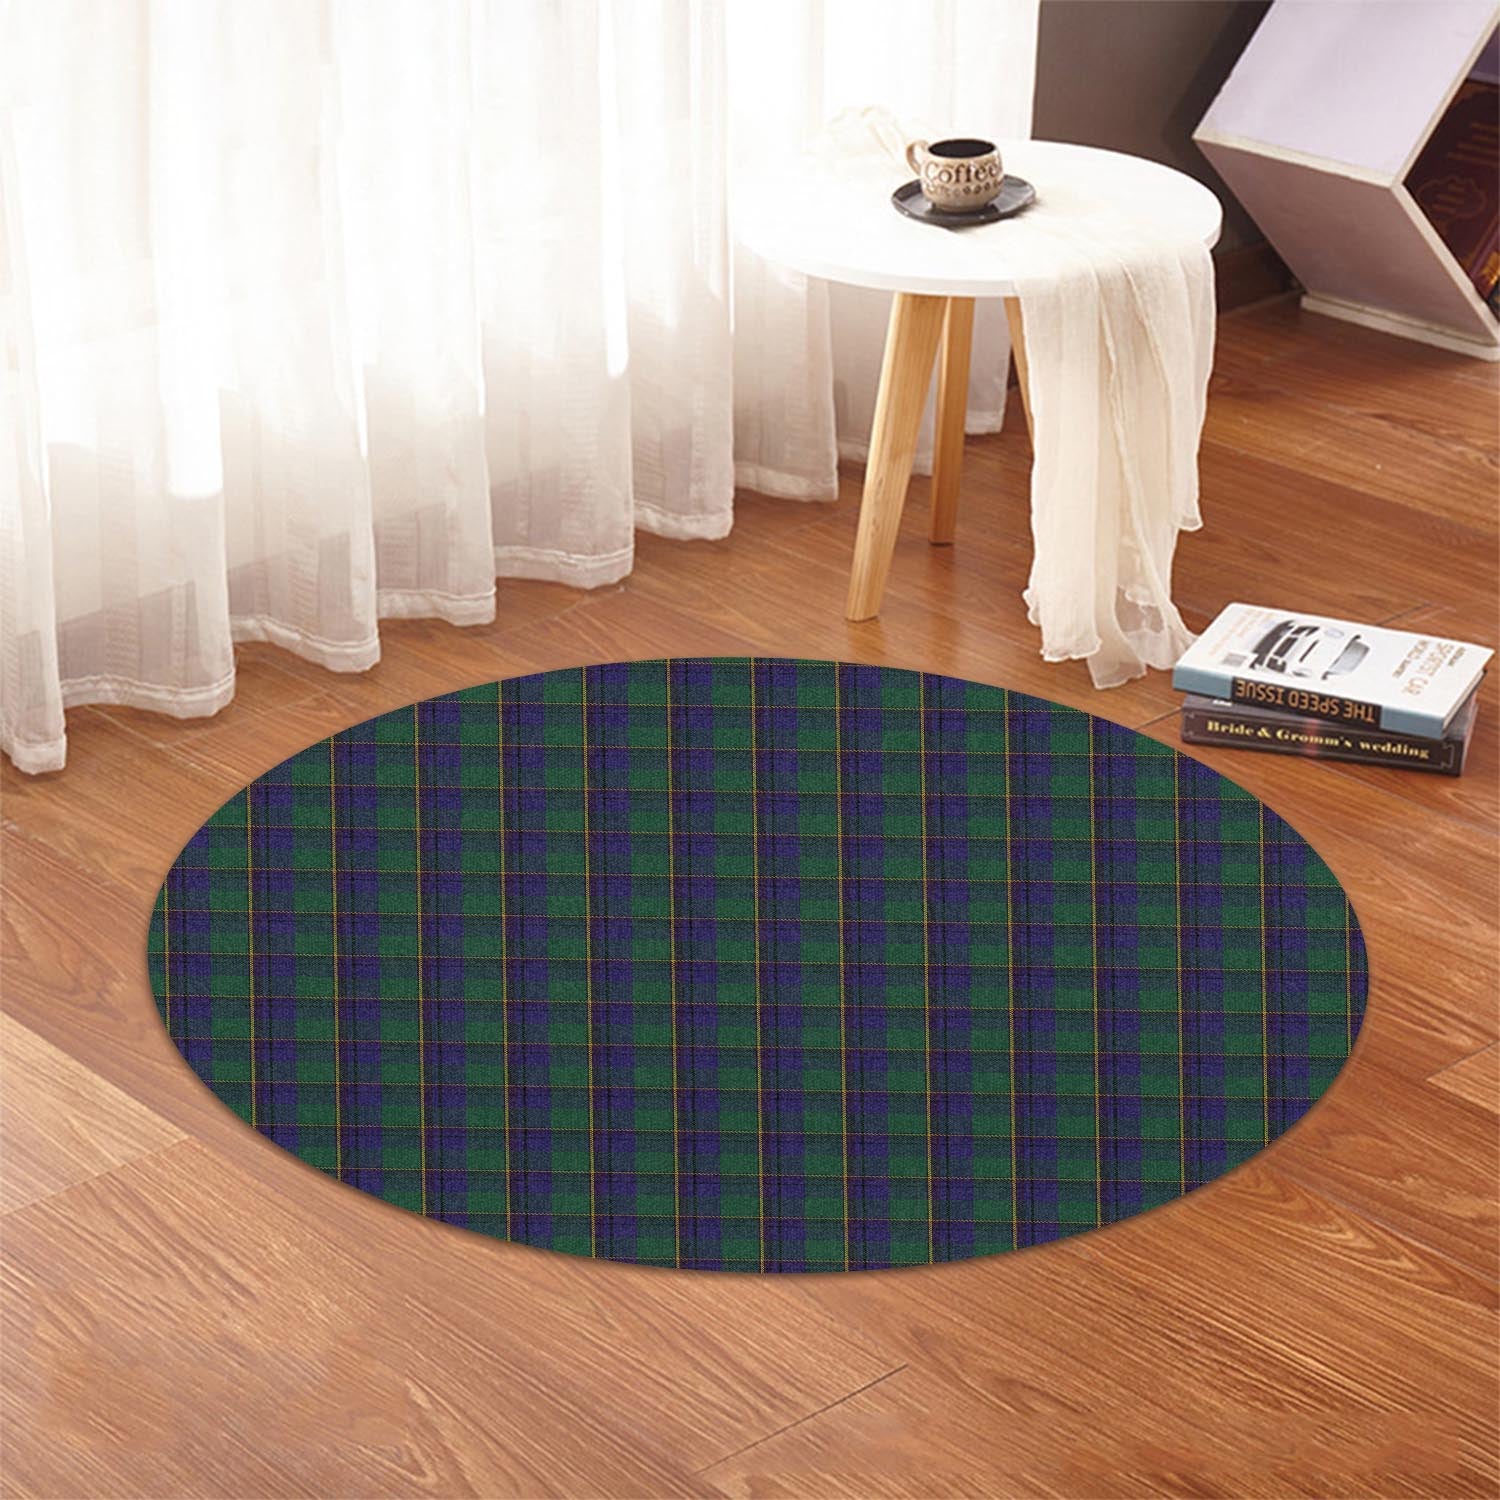 lowry-tartan-round-rug